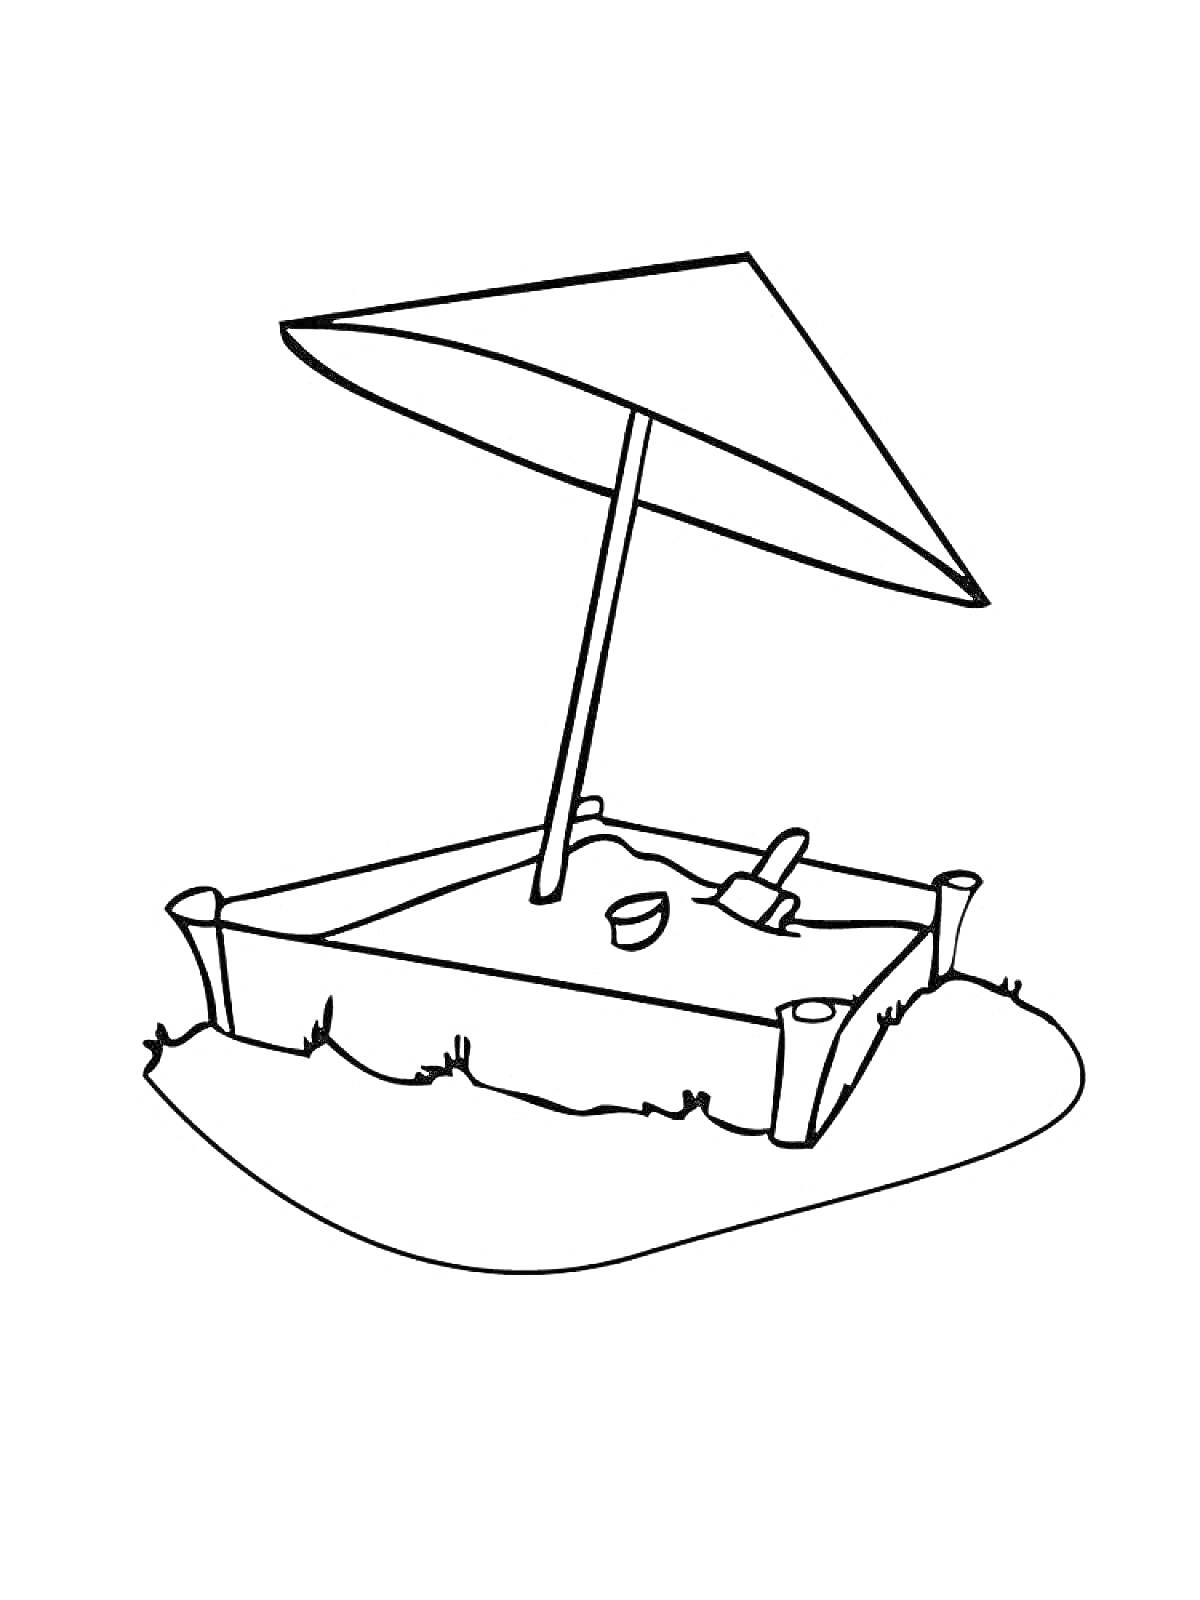 Песочница с игрушками и зонтиком. На изображении песочница с четырьмя столбиками по углам, зонтик, ведёрко и лопатка.